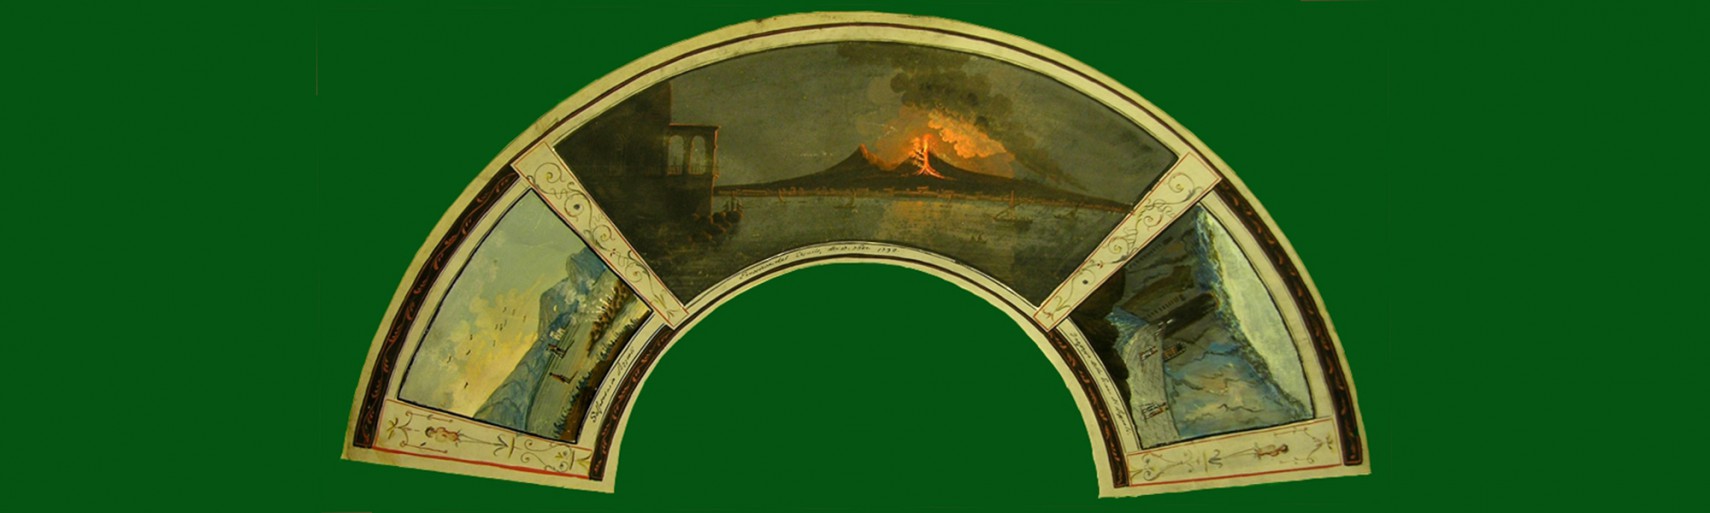 Vesuvio eruzione 17 ottobre 1792-Solfatara di Pozzuoli-Grotta di Pozzuoli